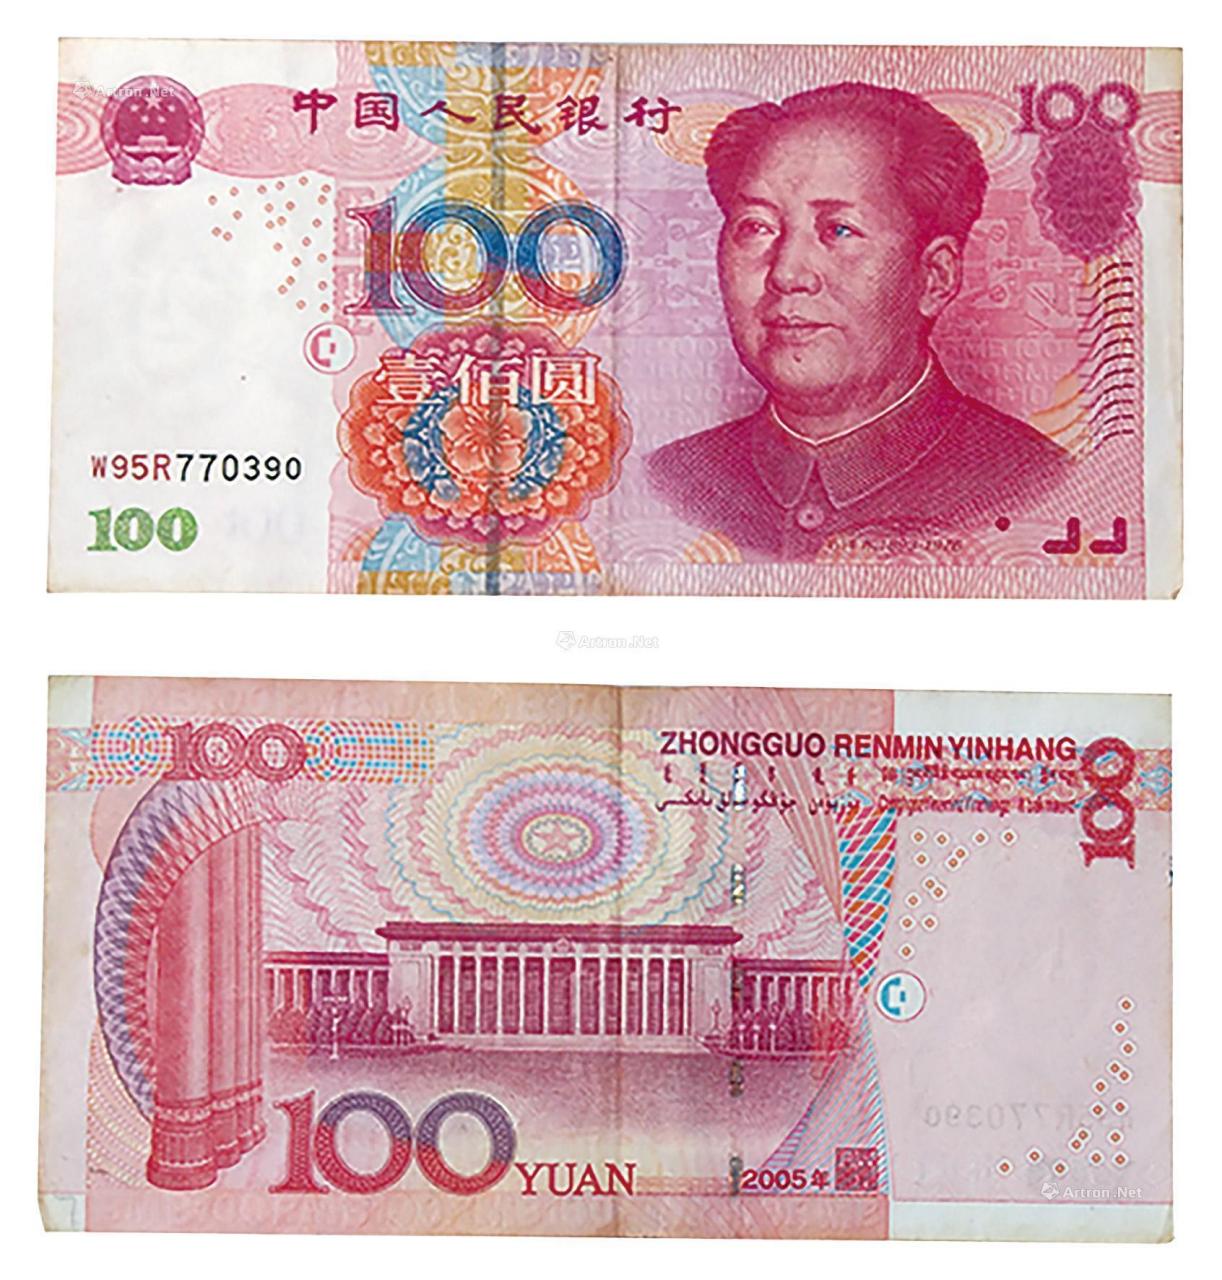 100元人民币水印图片